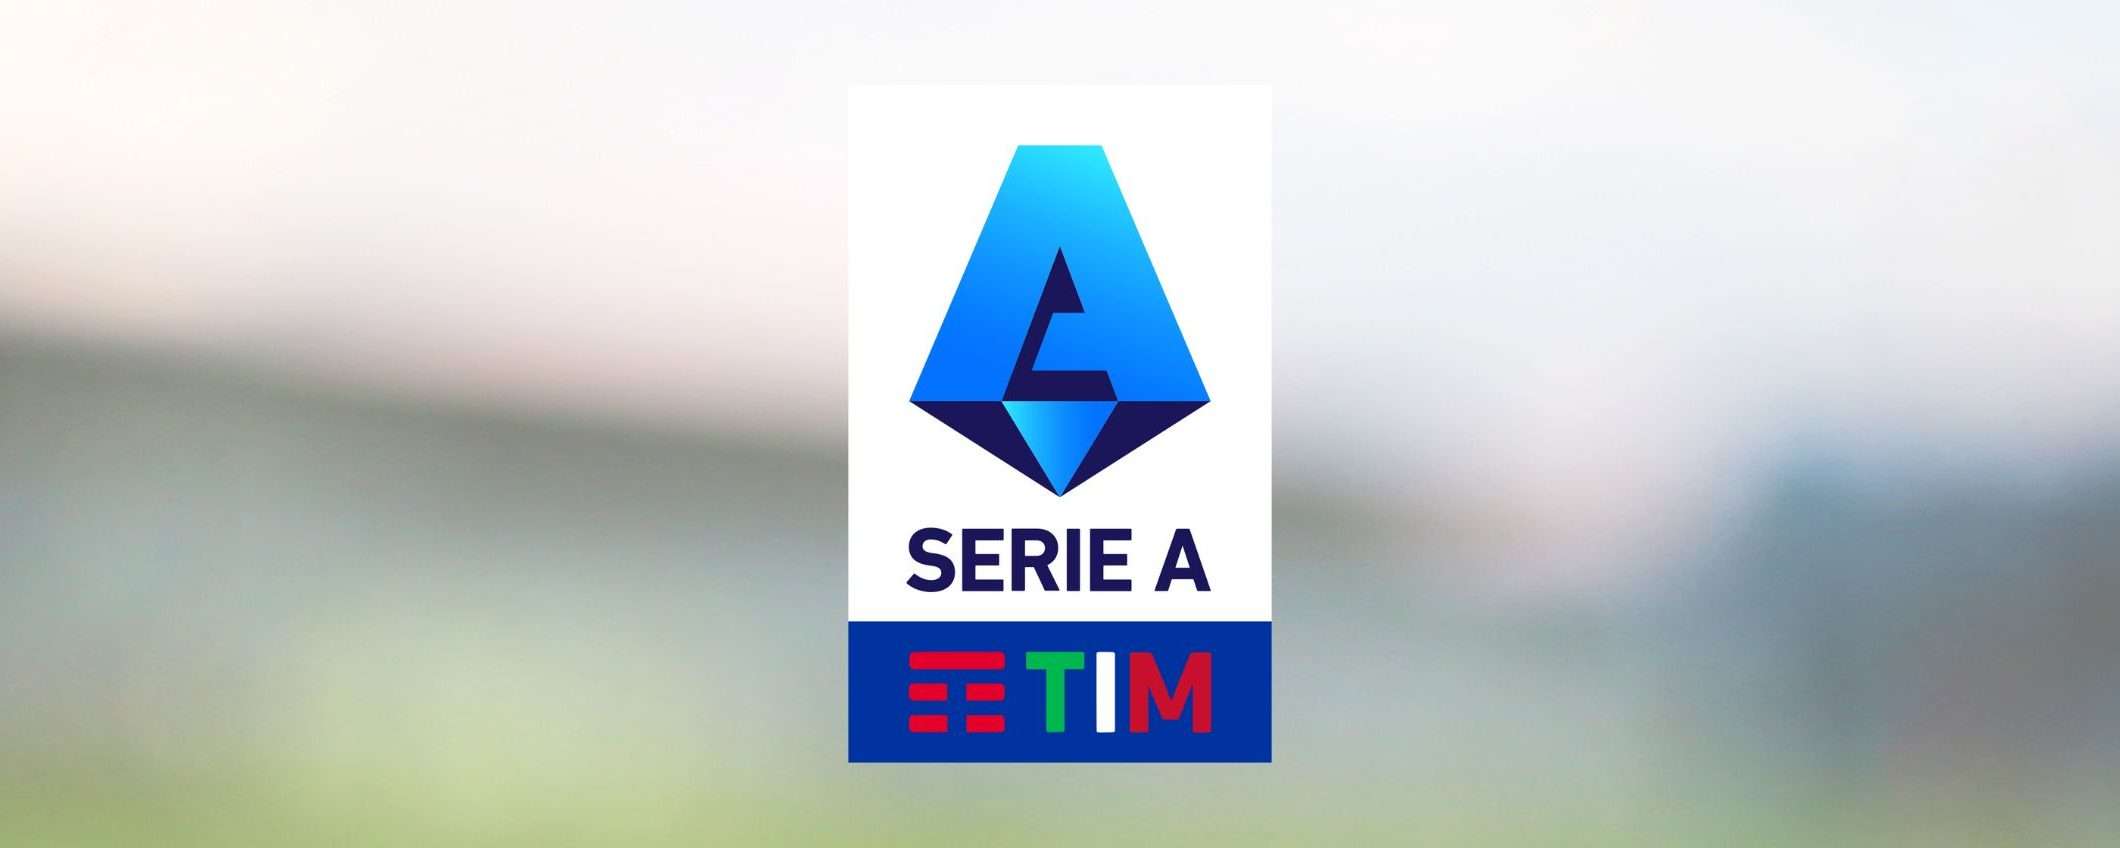 Diritti TV Serie A: assegnazione o canale della Lega? (update)